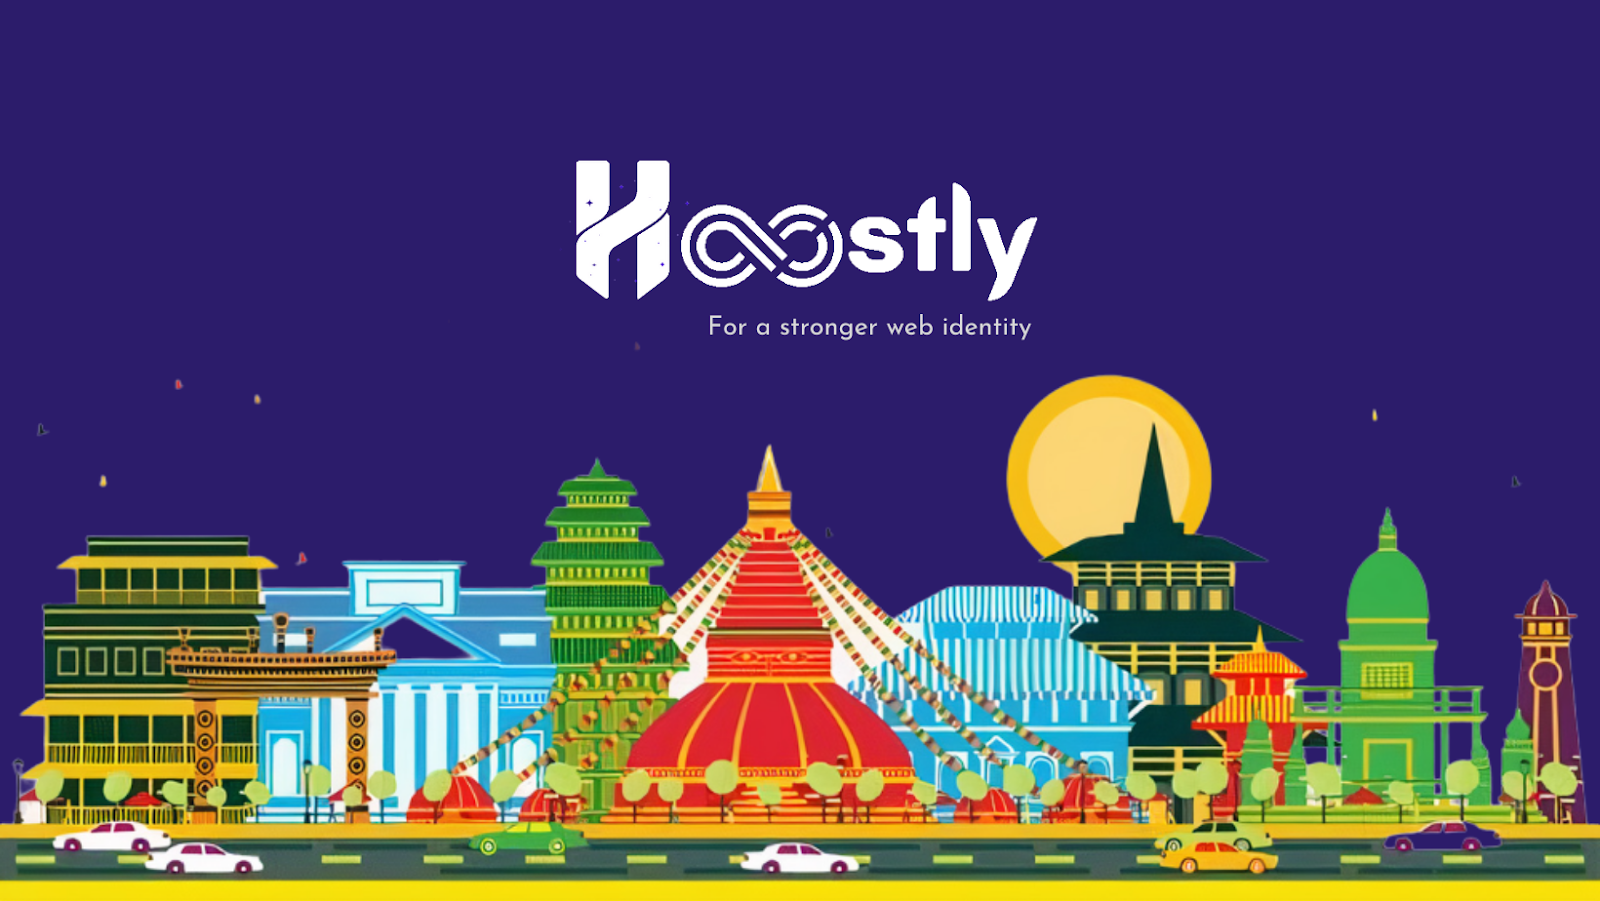 Hoostly Web Hosting - The Best Web Hosting Platform